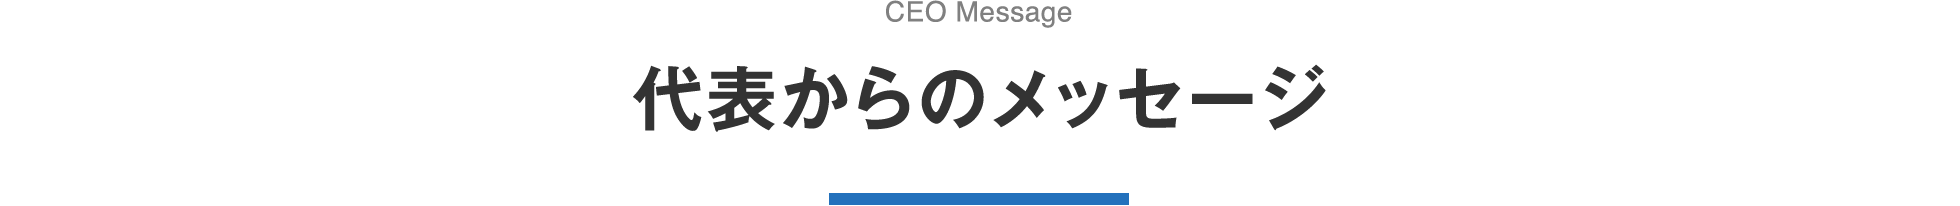 代表からのメッセージ CEO Message